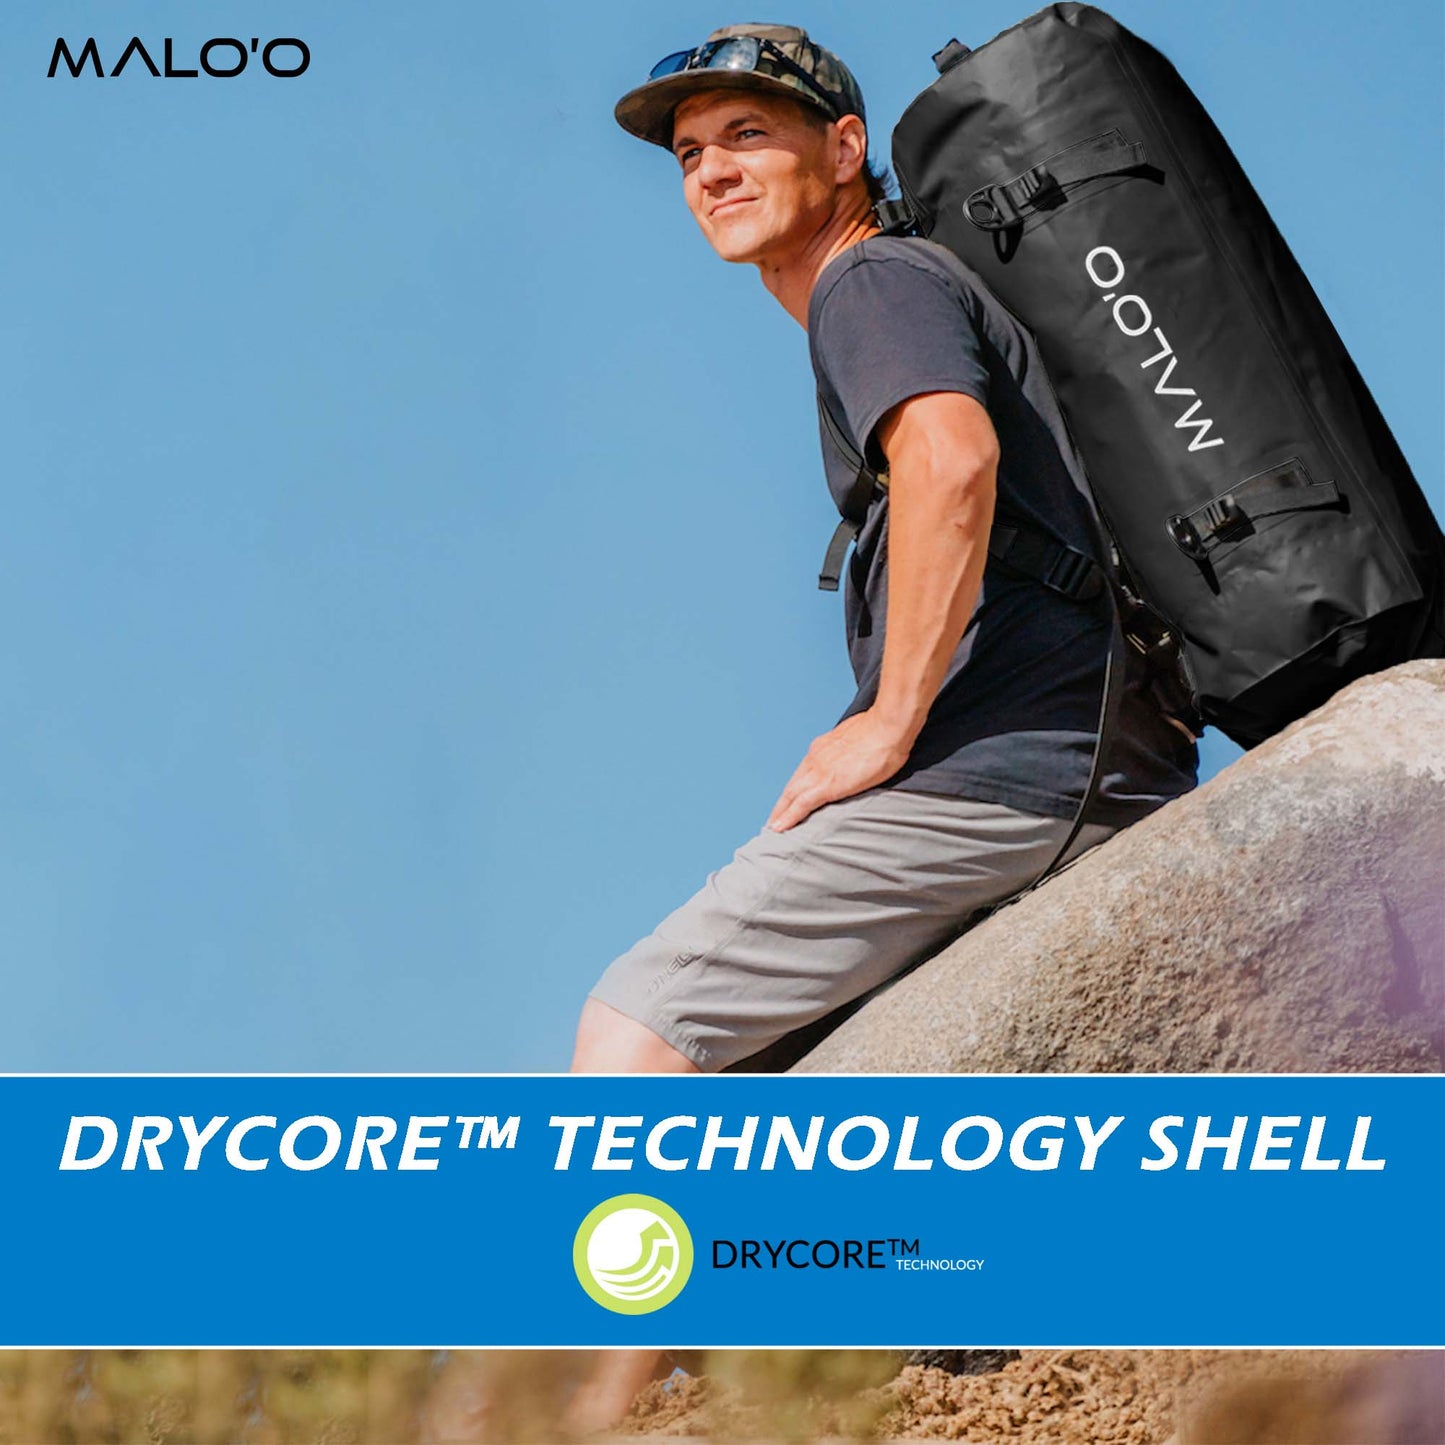 Malo'o DryPack Waterproof Backpack Duffle - 90L